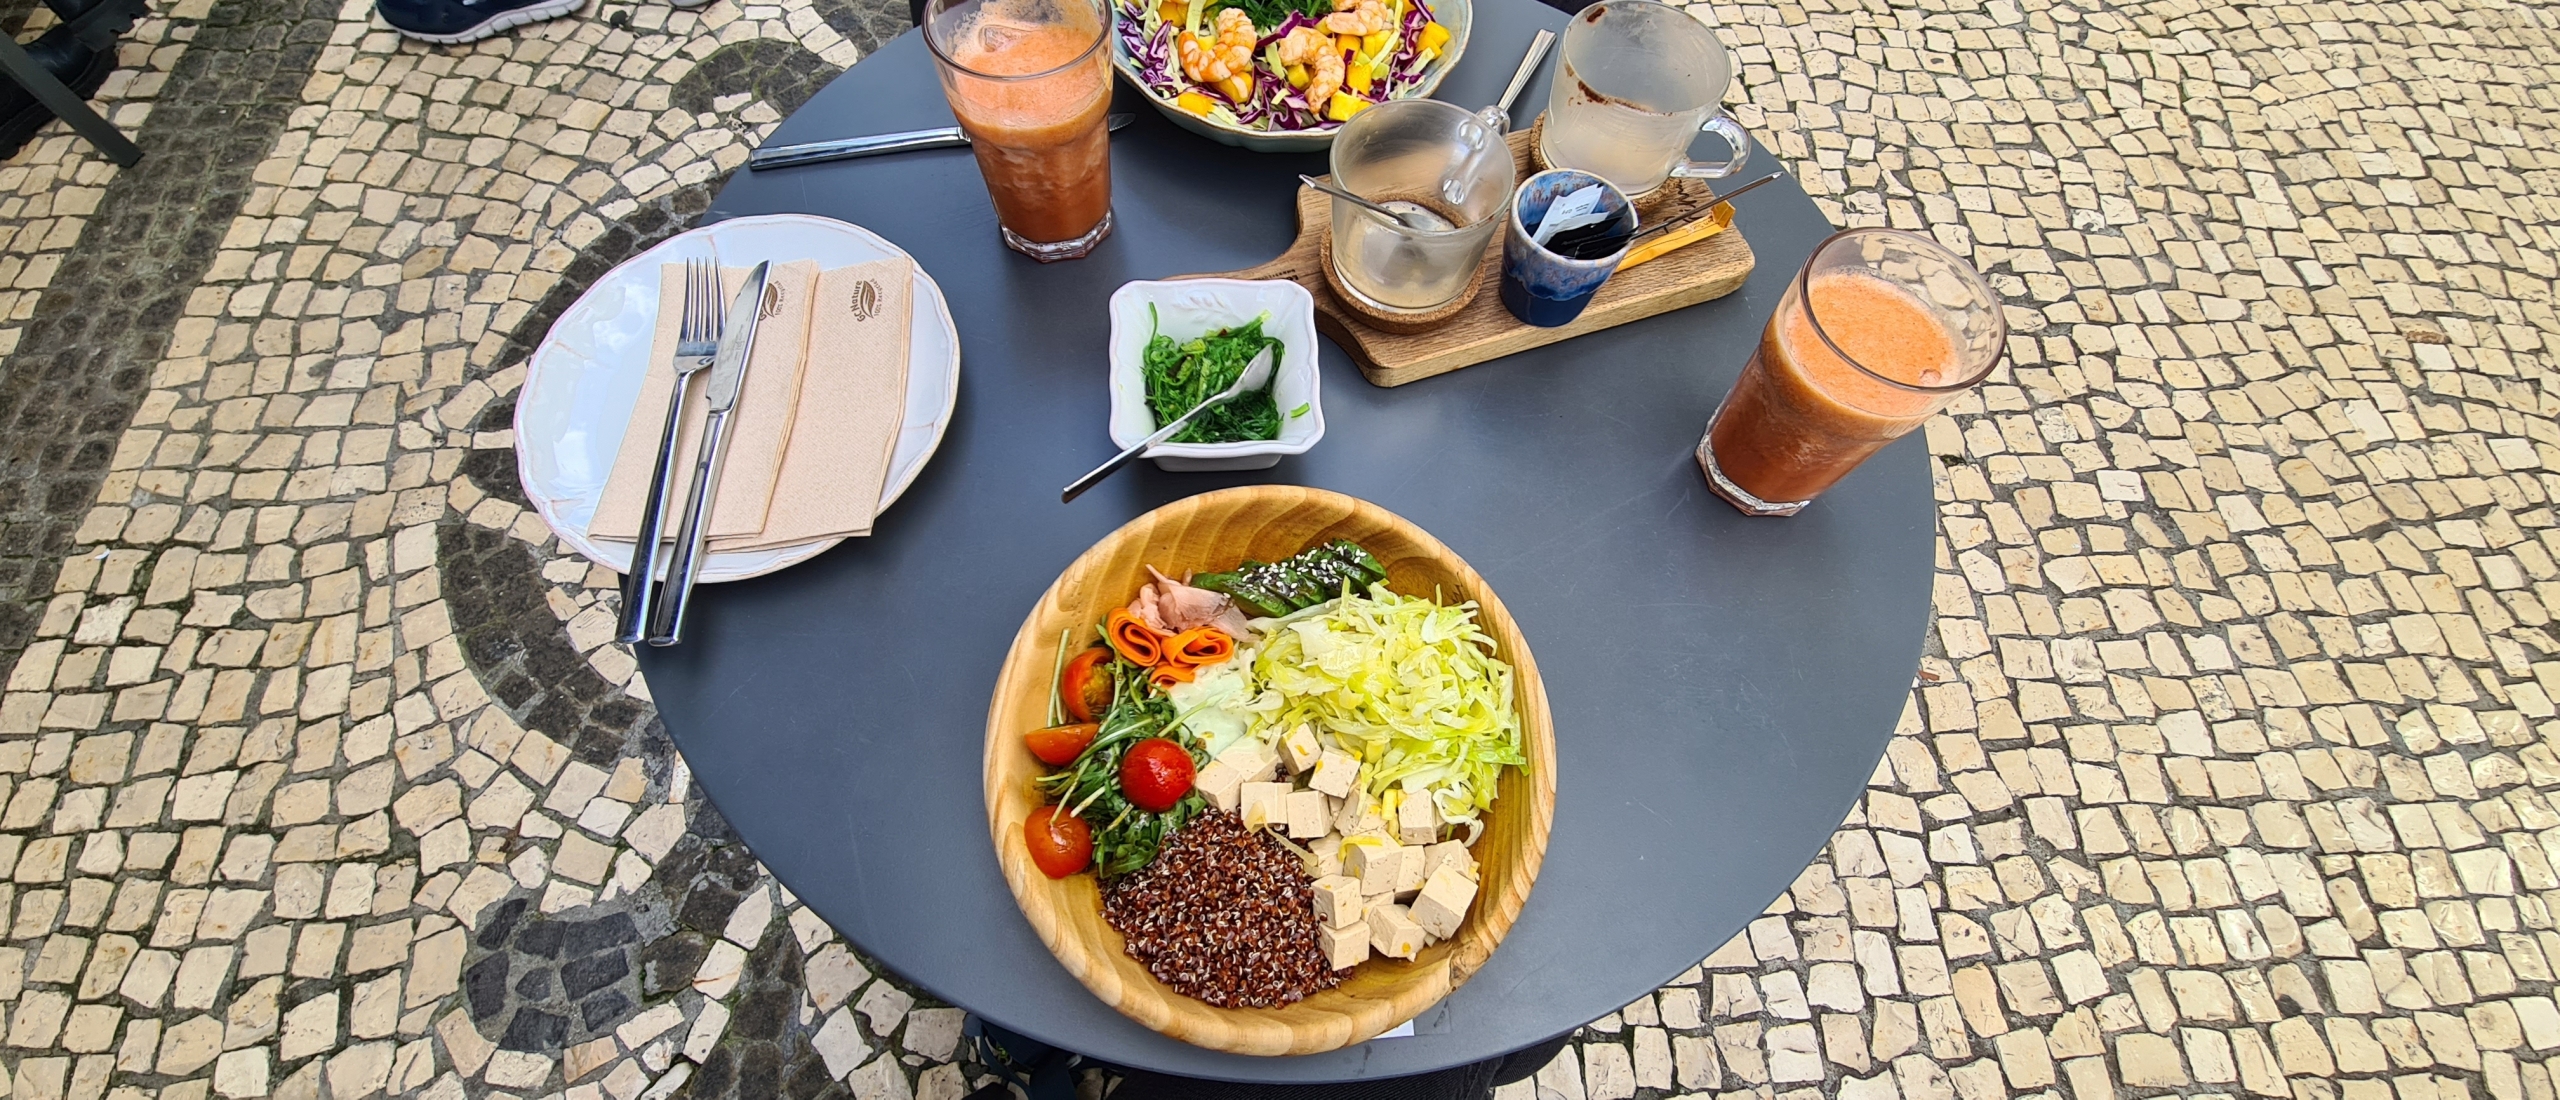 8 tips voor vegan eten en koffie op Maderia